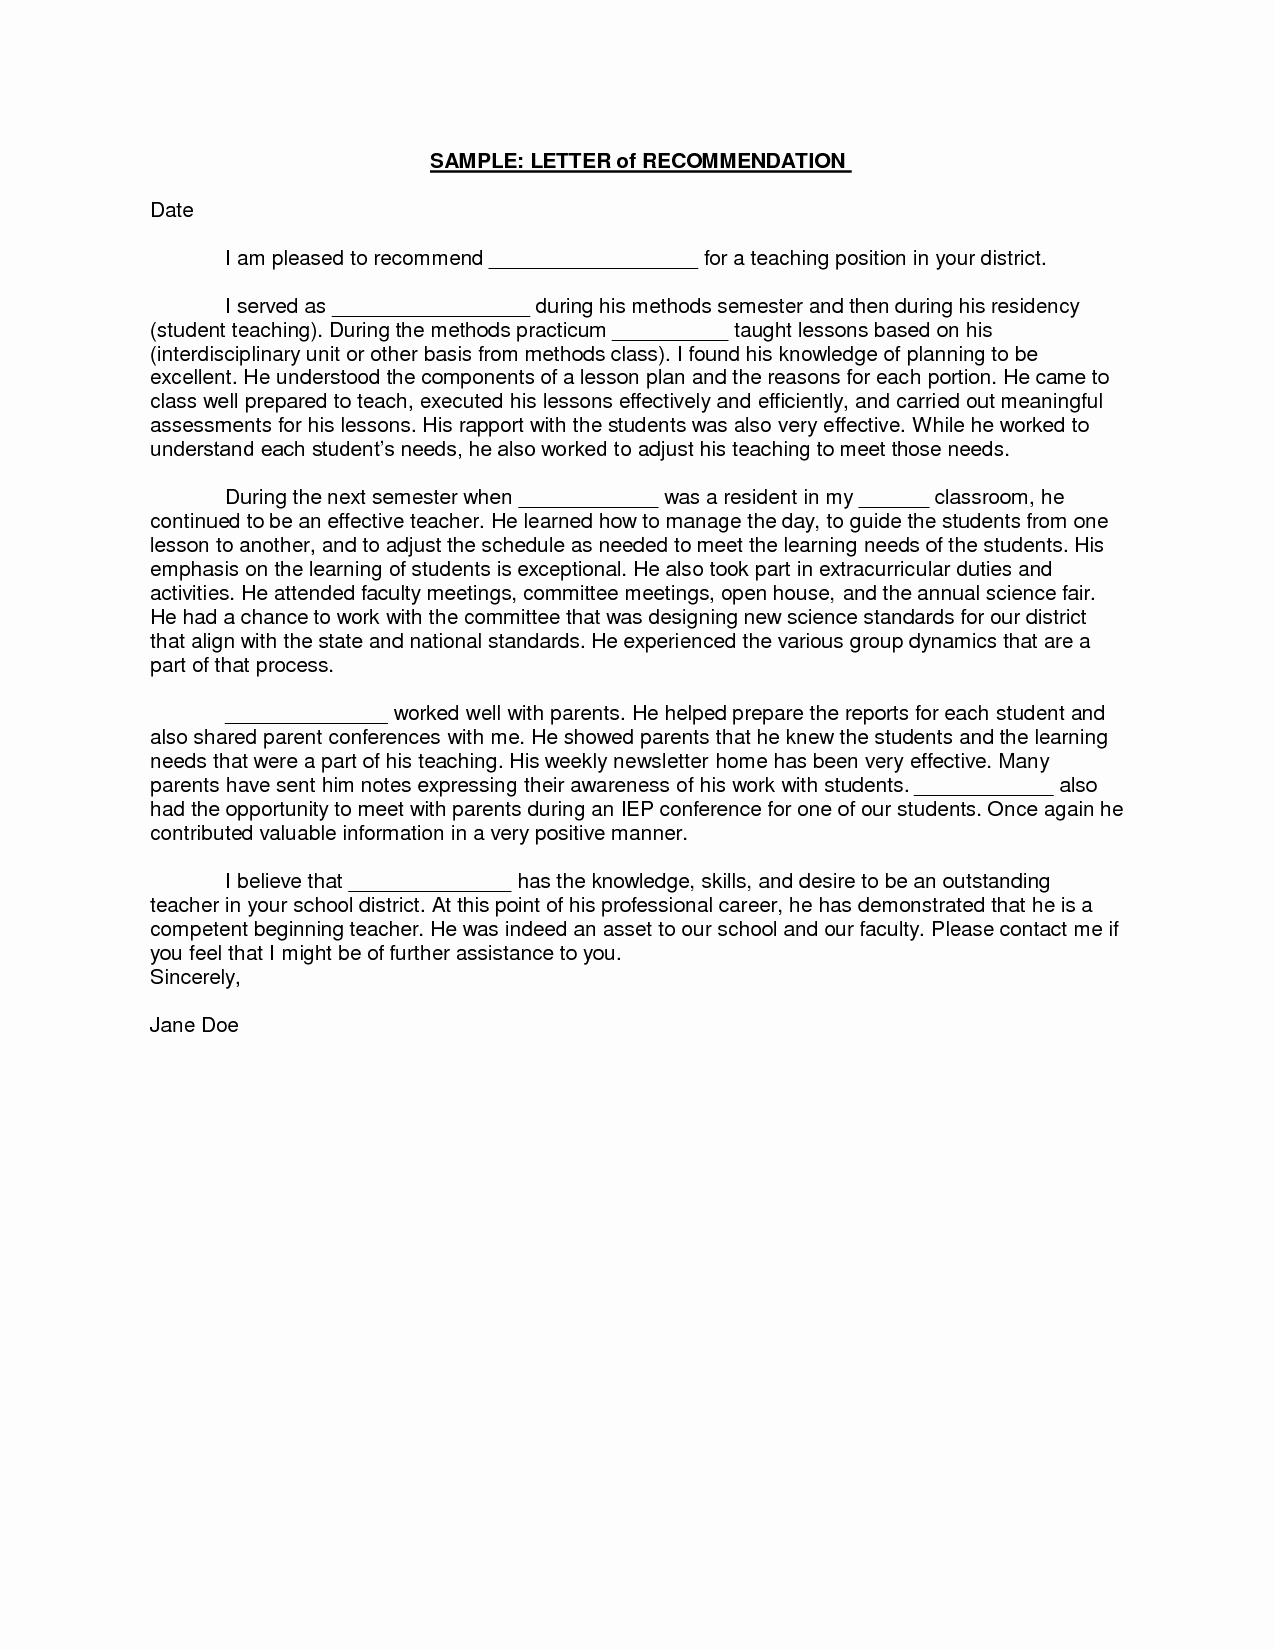 Recommendation Letter for Faculty Position Elegant Sample Student Teacher Re Mendation Letters V9nqmvof